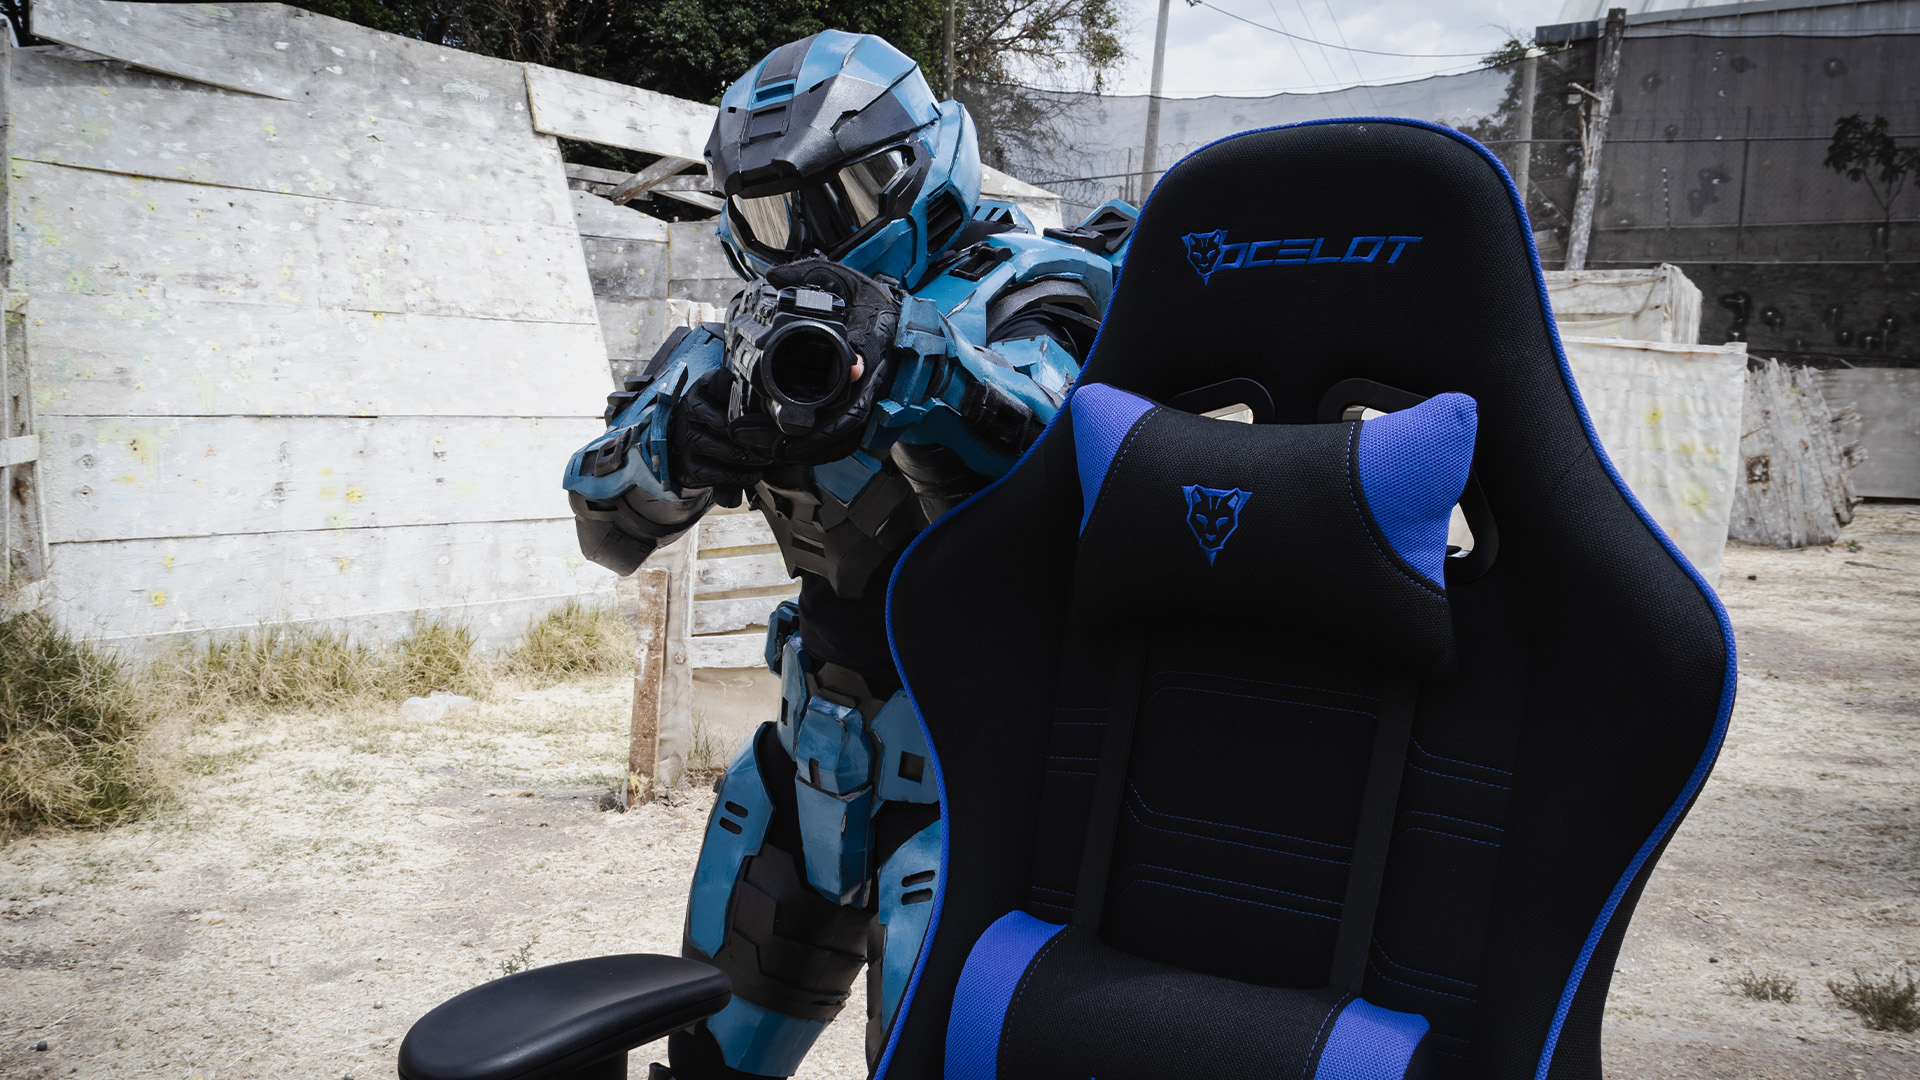 silla gamer azul